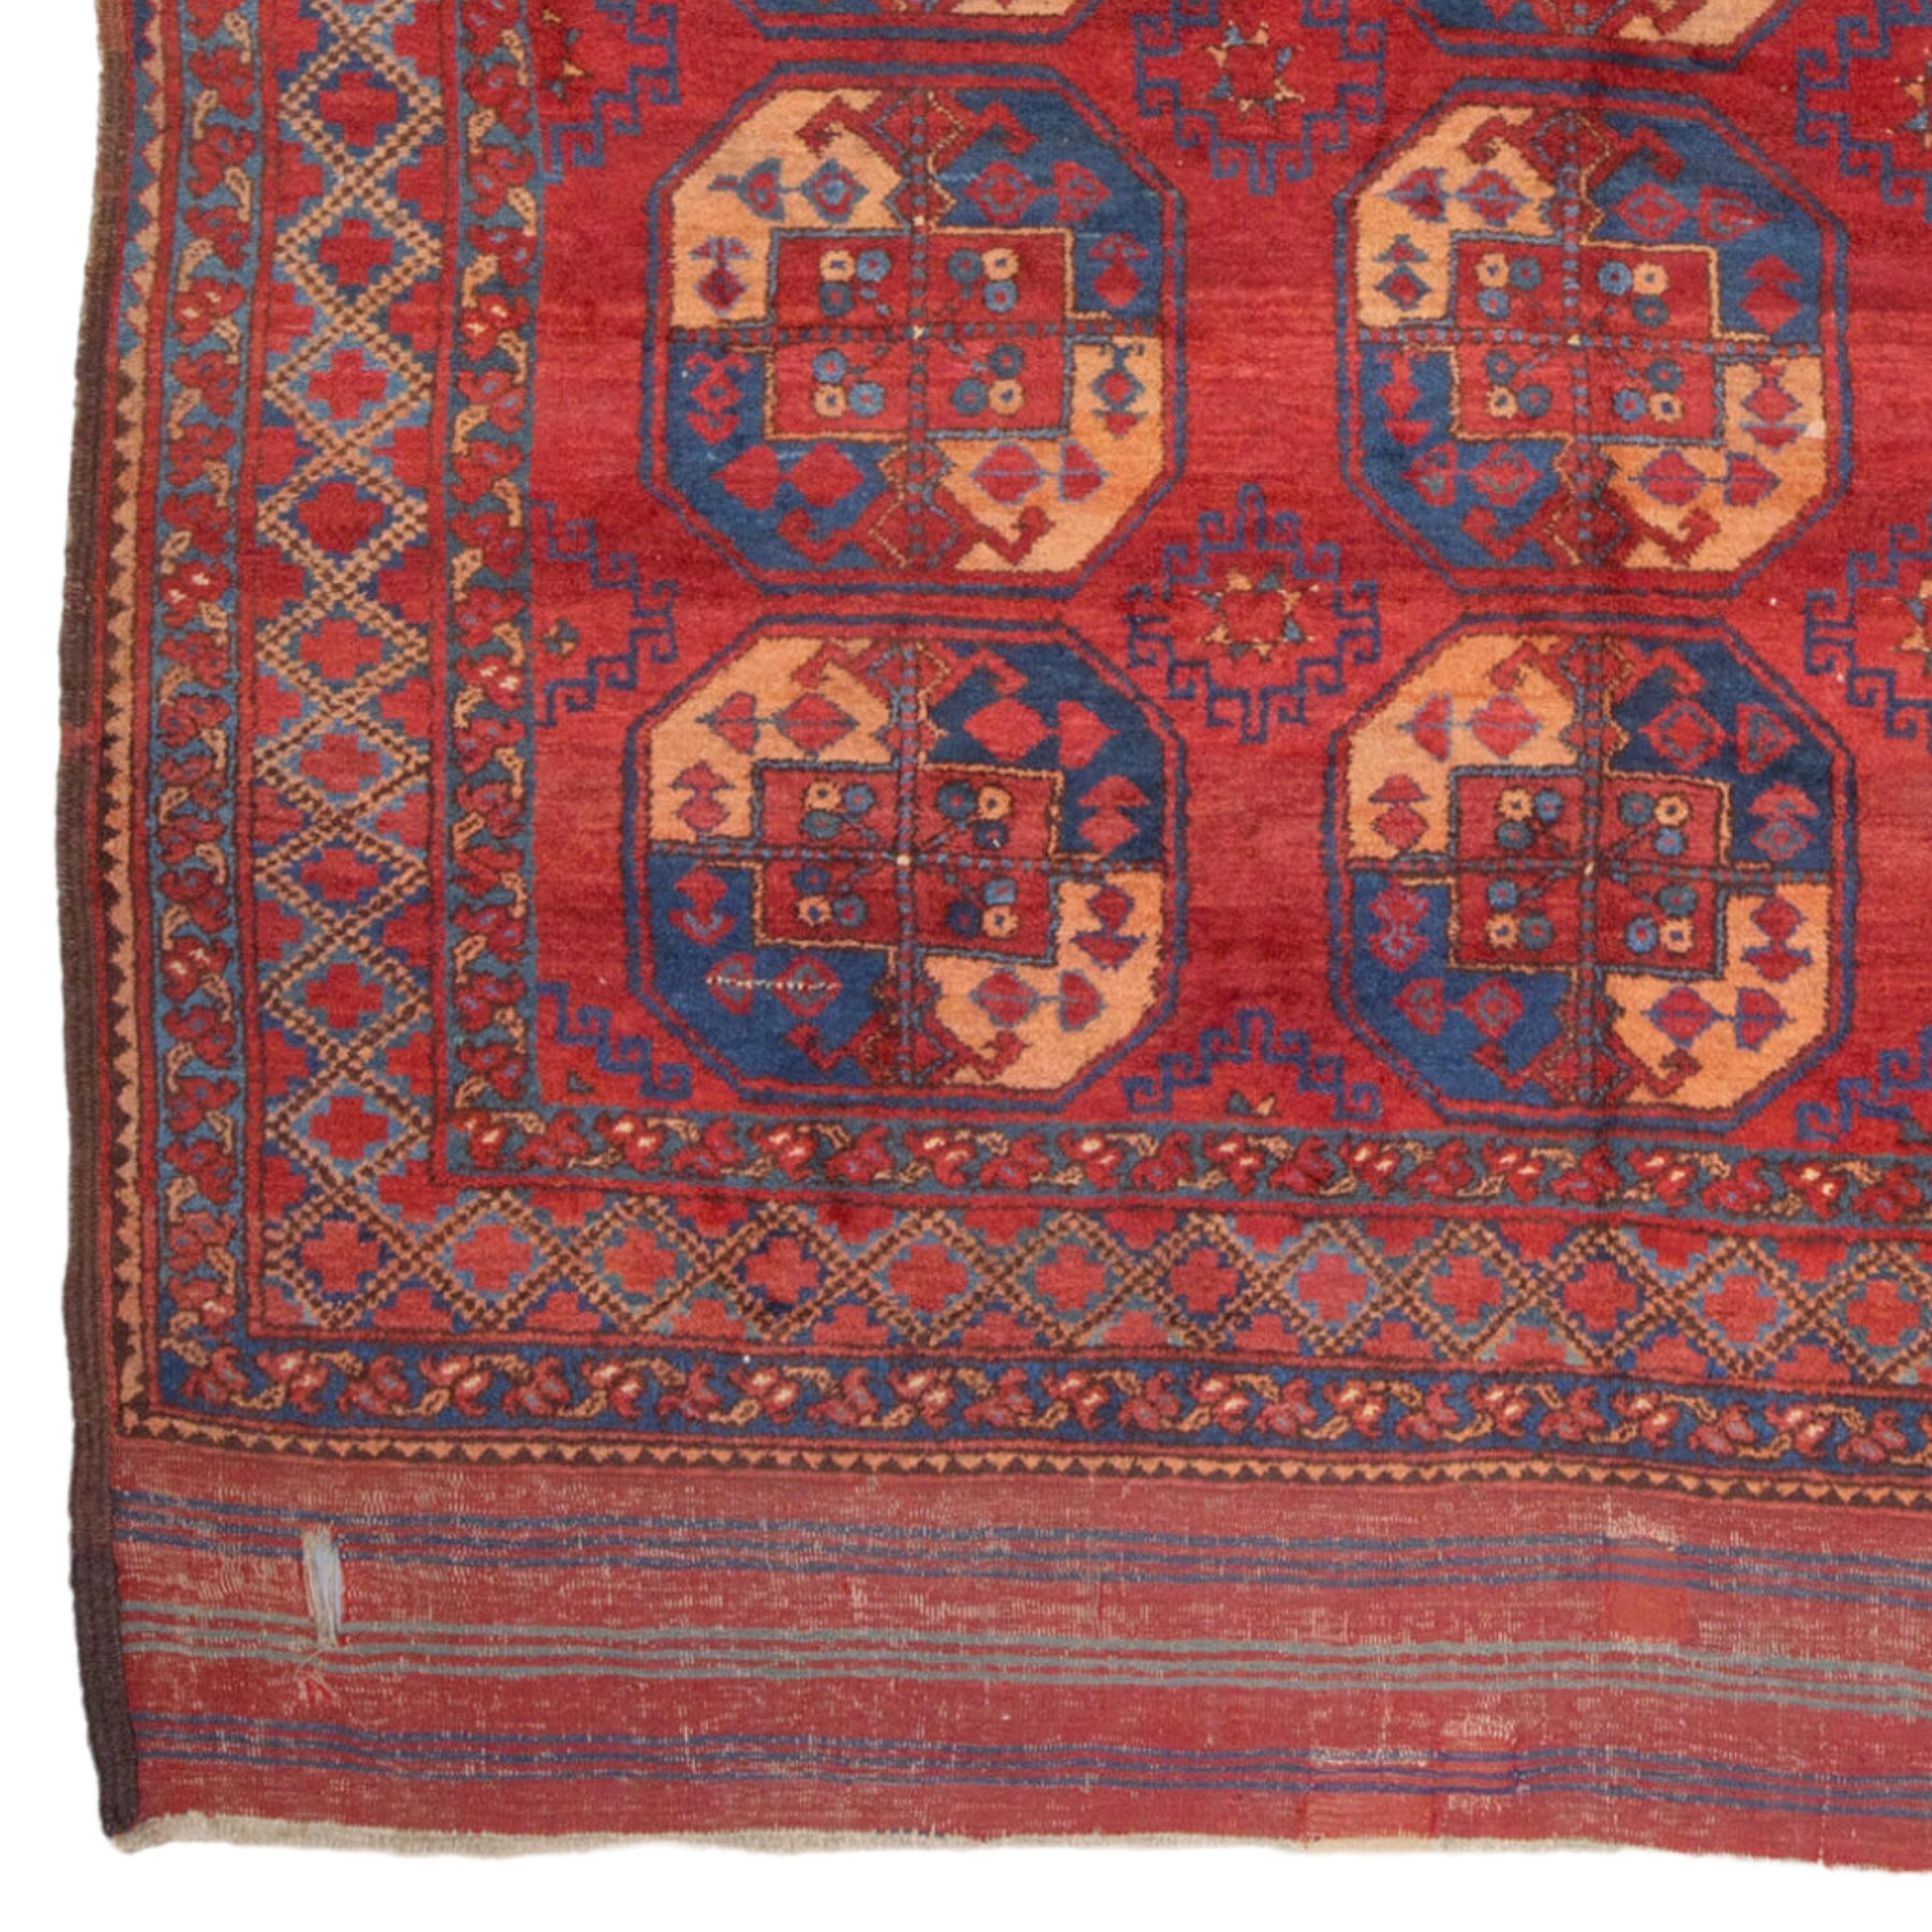 Turkmenischer Ersari-Hauptteppich aus dem 19.
Größe 225 x 280 cm (7,38 - 9,18 ft)

Es handelt sich um einen handgeknüpften Stammesteppich, der ausschließlich aus natürlichen Farbstoffen und handgewebter Wolle besteht. Dieser Teppich wurde im Rahmen